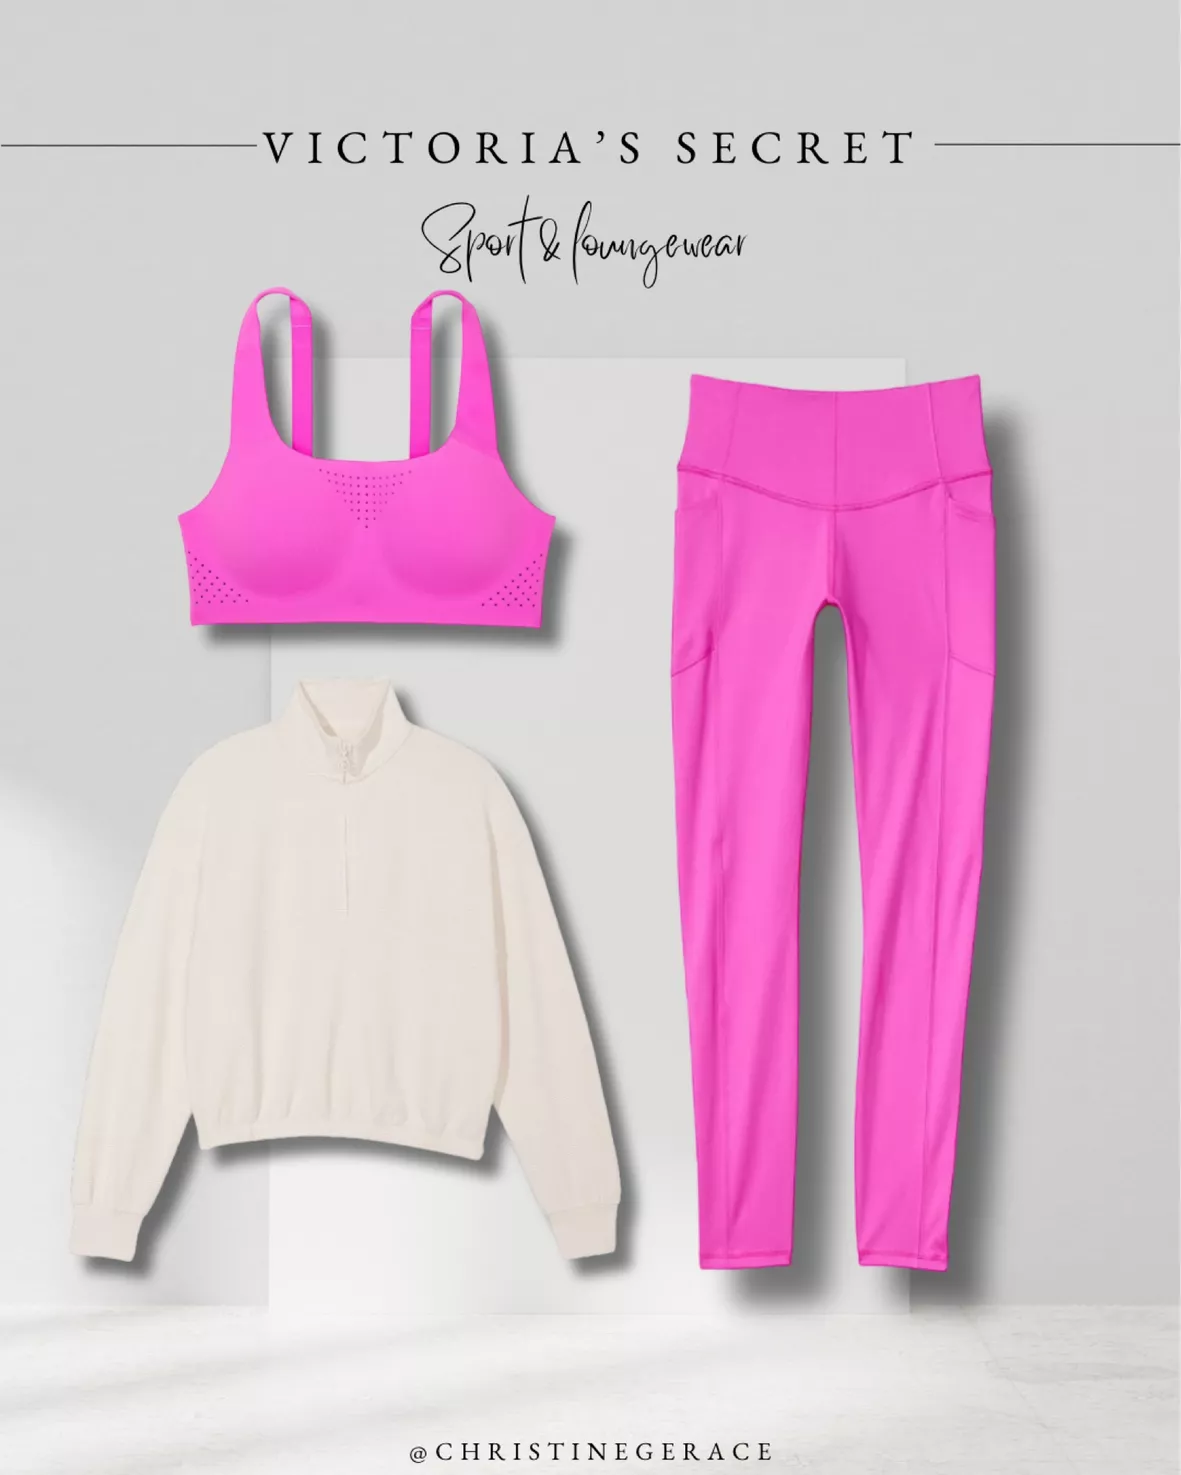 ♥ VSX Sport  Victoria's Secret Workout Clothes for Women